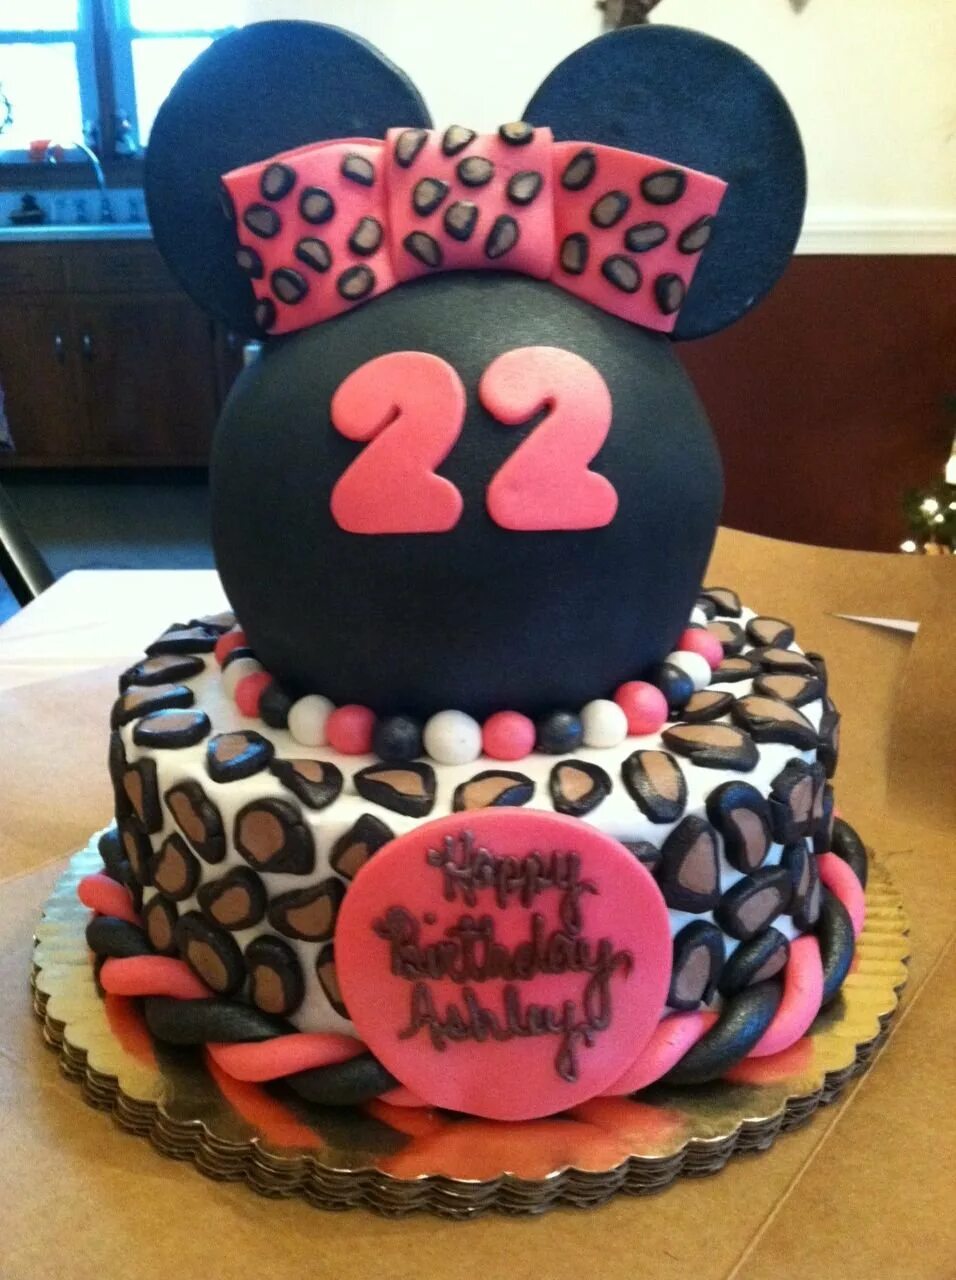 Торт девушке 22. Торт для девочки 22 года. Торт на день рождения 22 года. Торт на 22 года девушке. Торт на день рождения девочке 22 года.